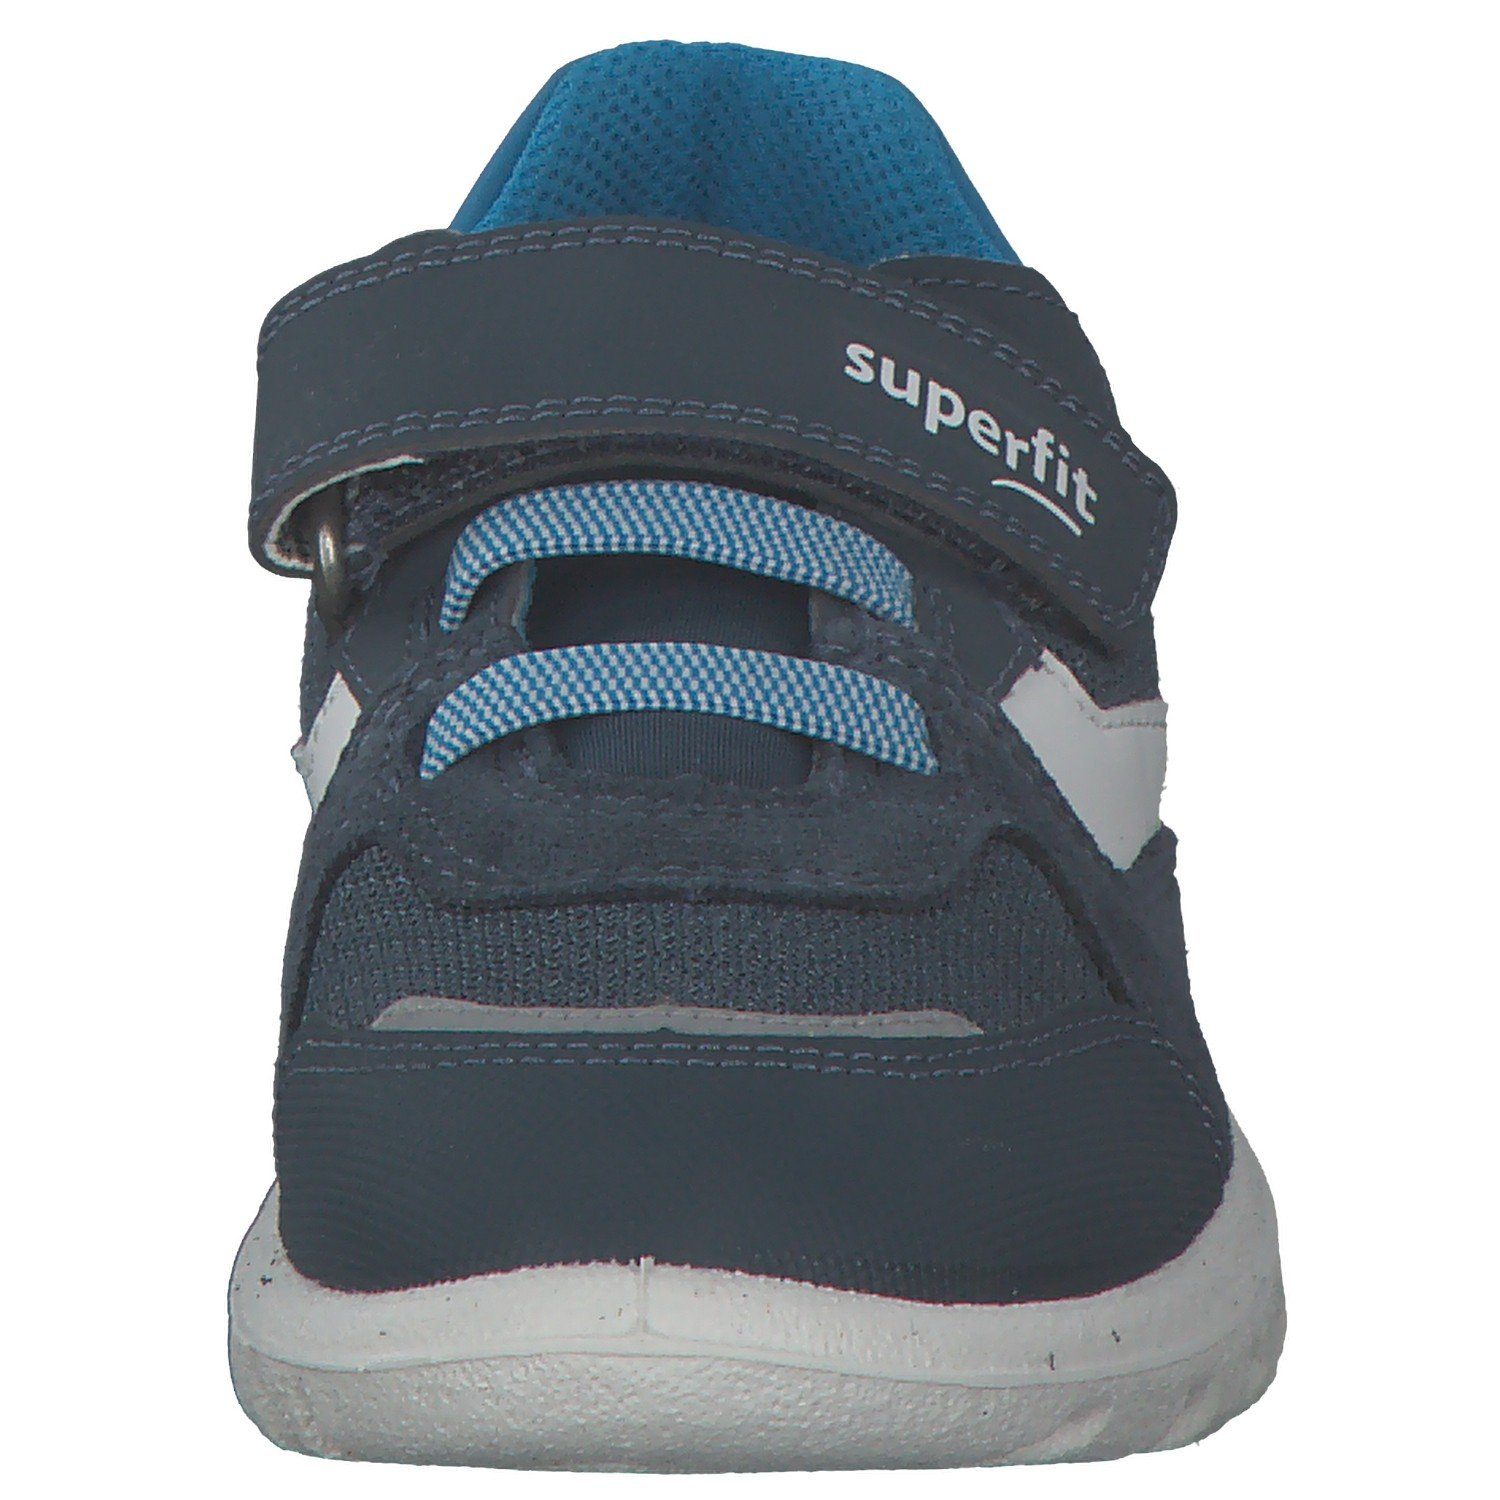 Superfit 06195 Superfit Sneaker